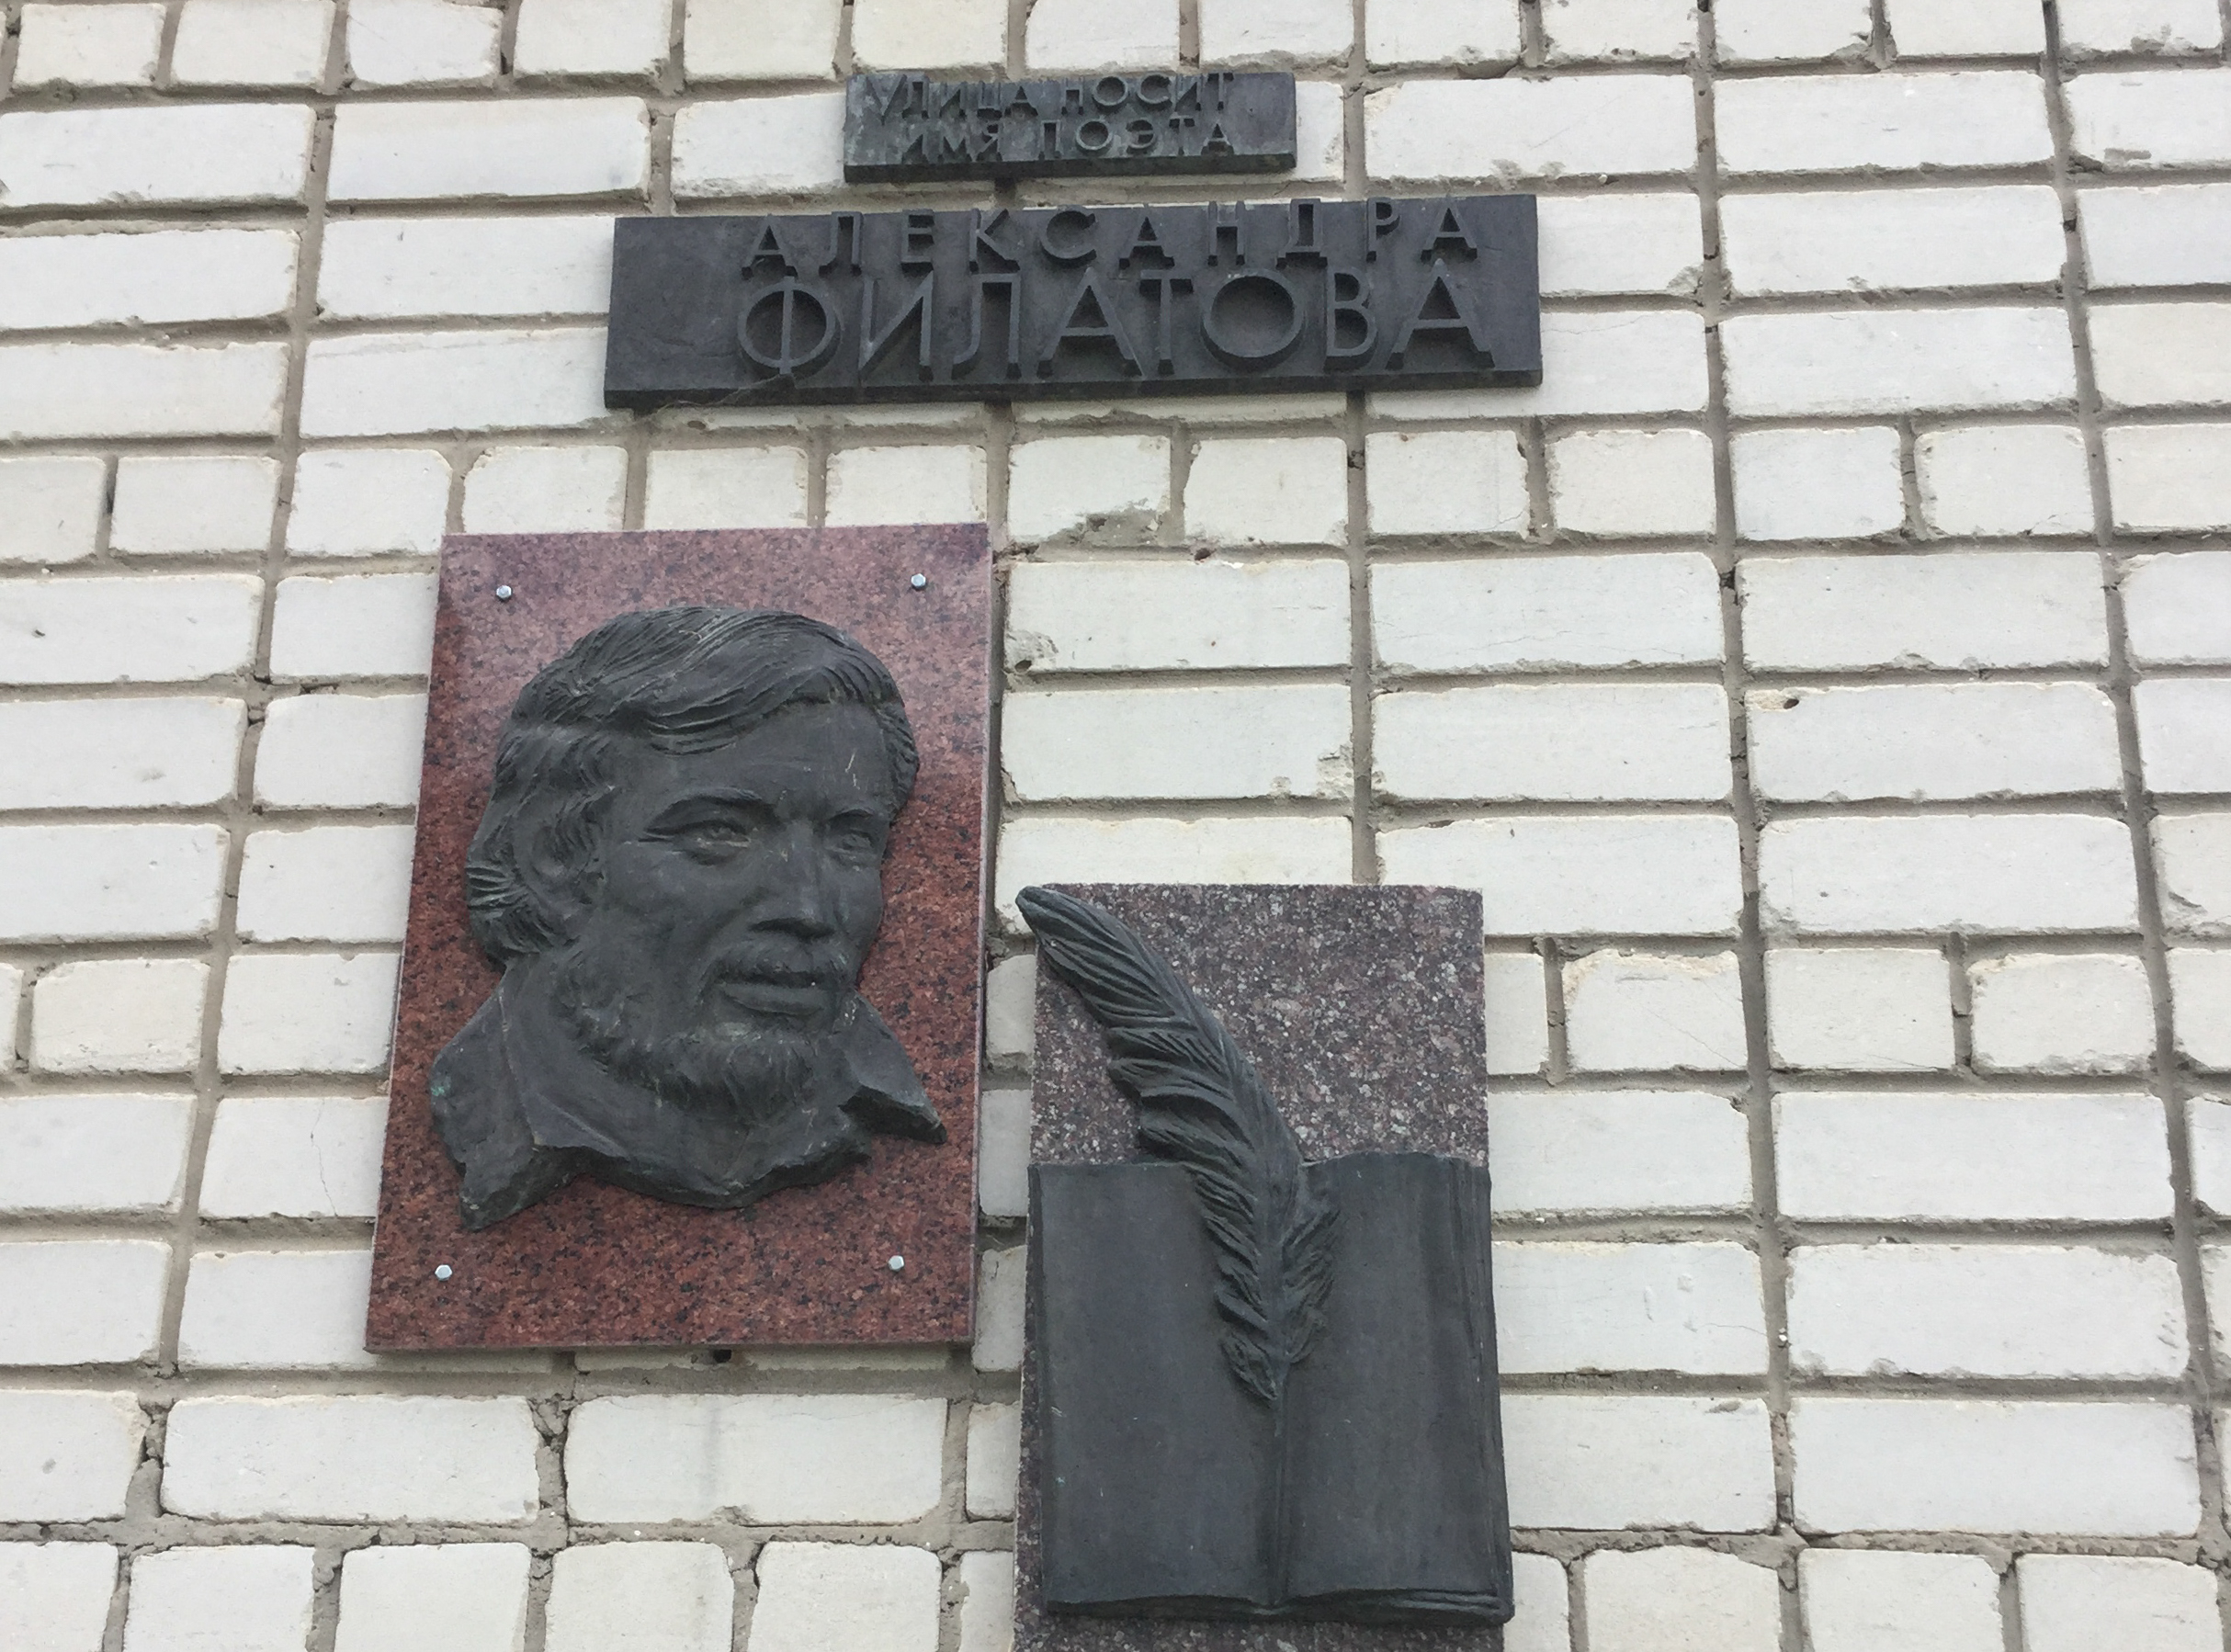 Улица Александра Филатова в Никольском 